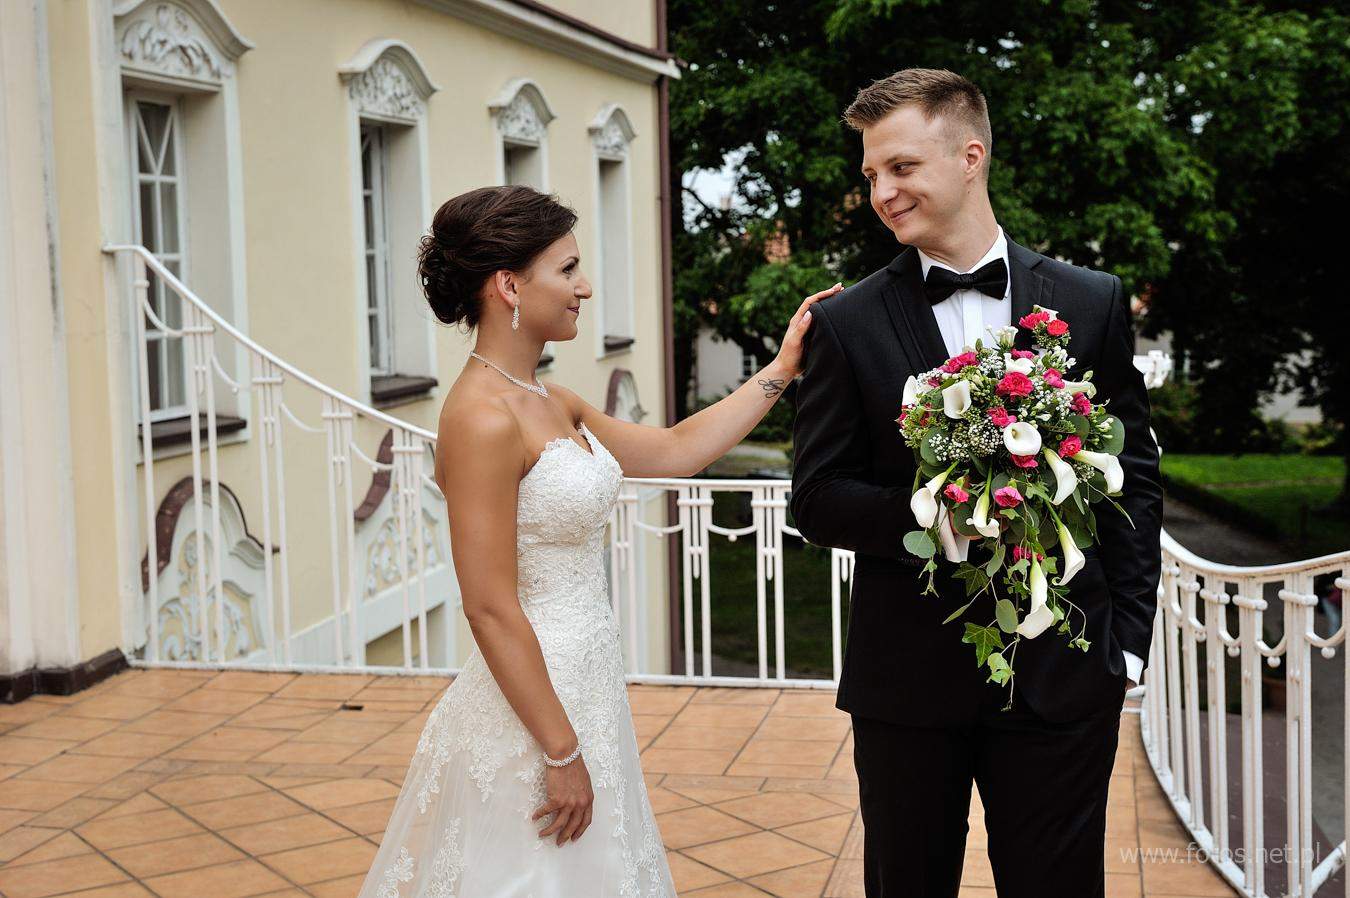 Przygotowania ślubne pałac w Witaszycach. fotografia ślubna poznań